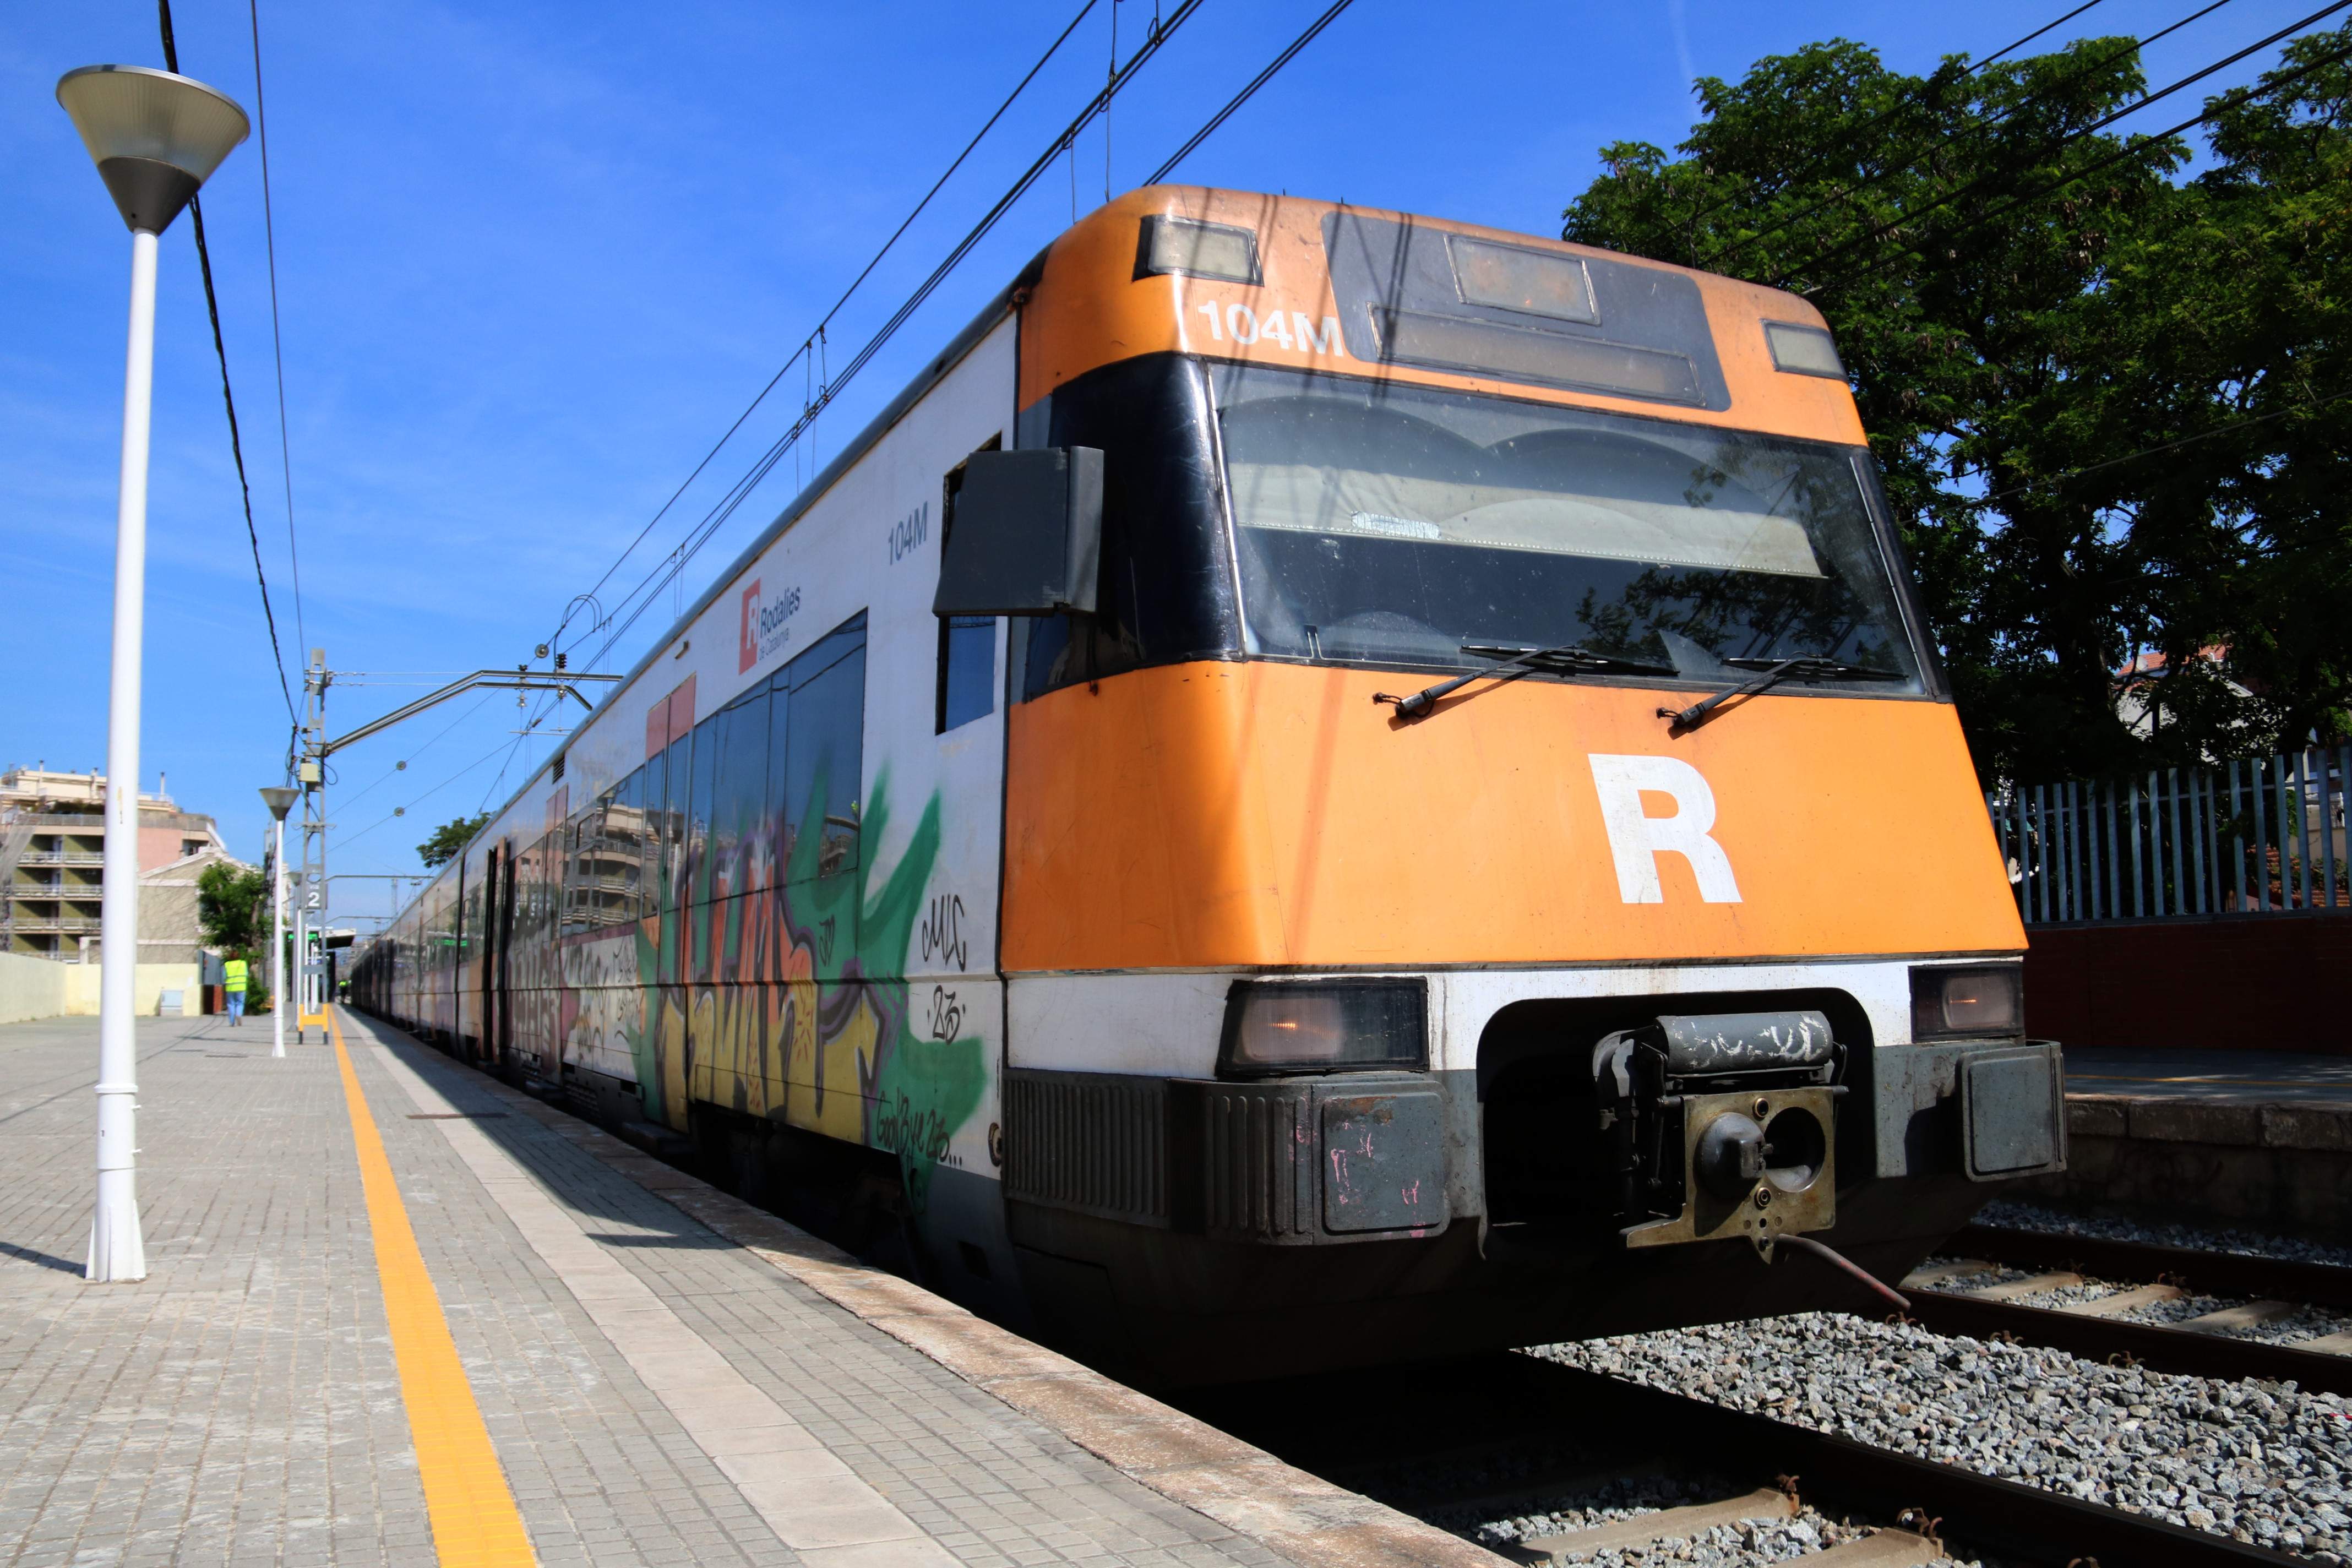 Interrumpida la circulación de trenes en la R1 entre Badalona y Montgat por un atropello